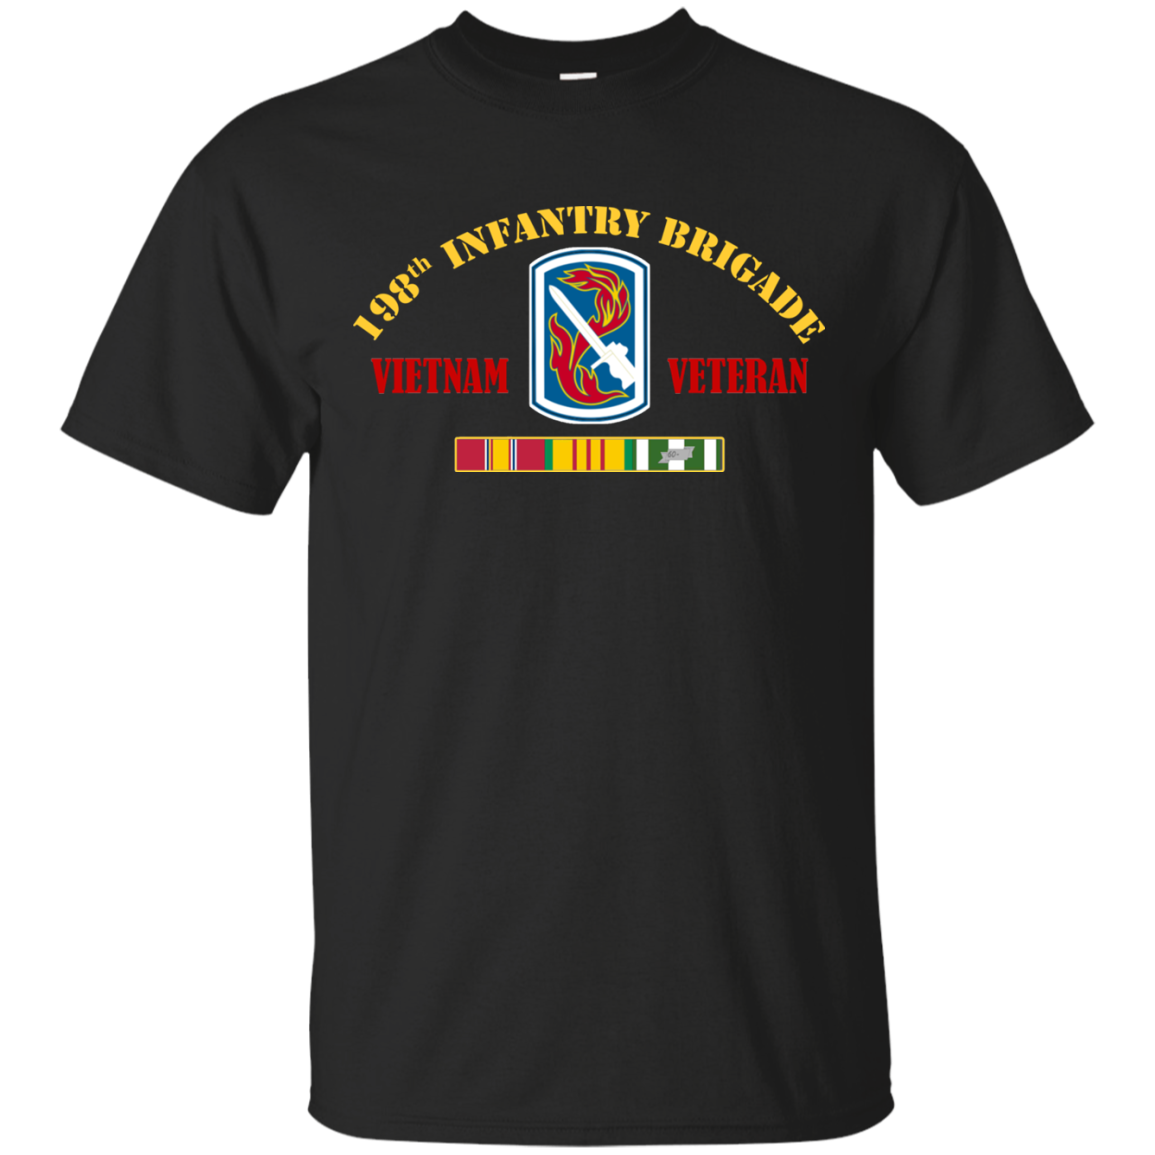 198th Infantry Brigade Vietnam Veteran - Teesmiley